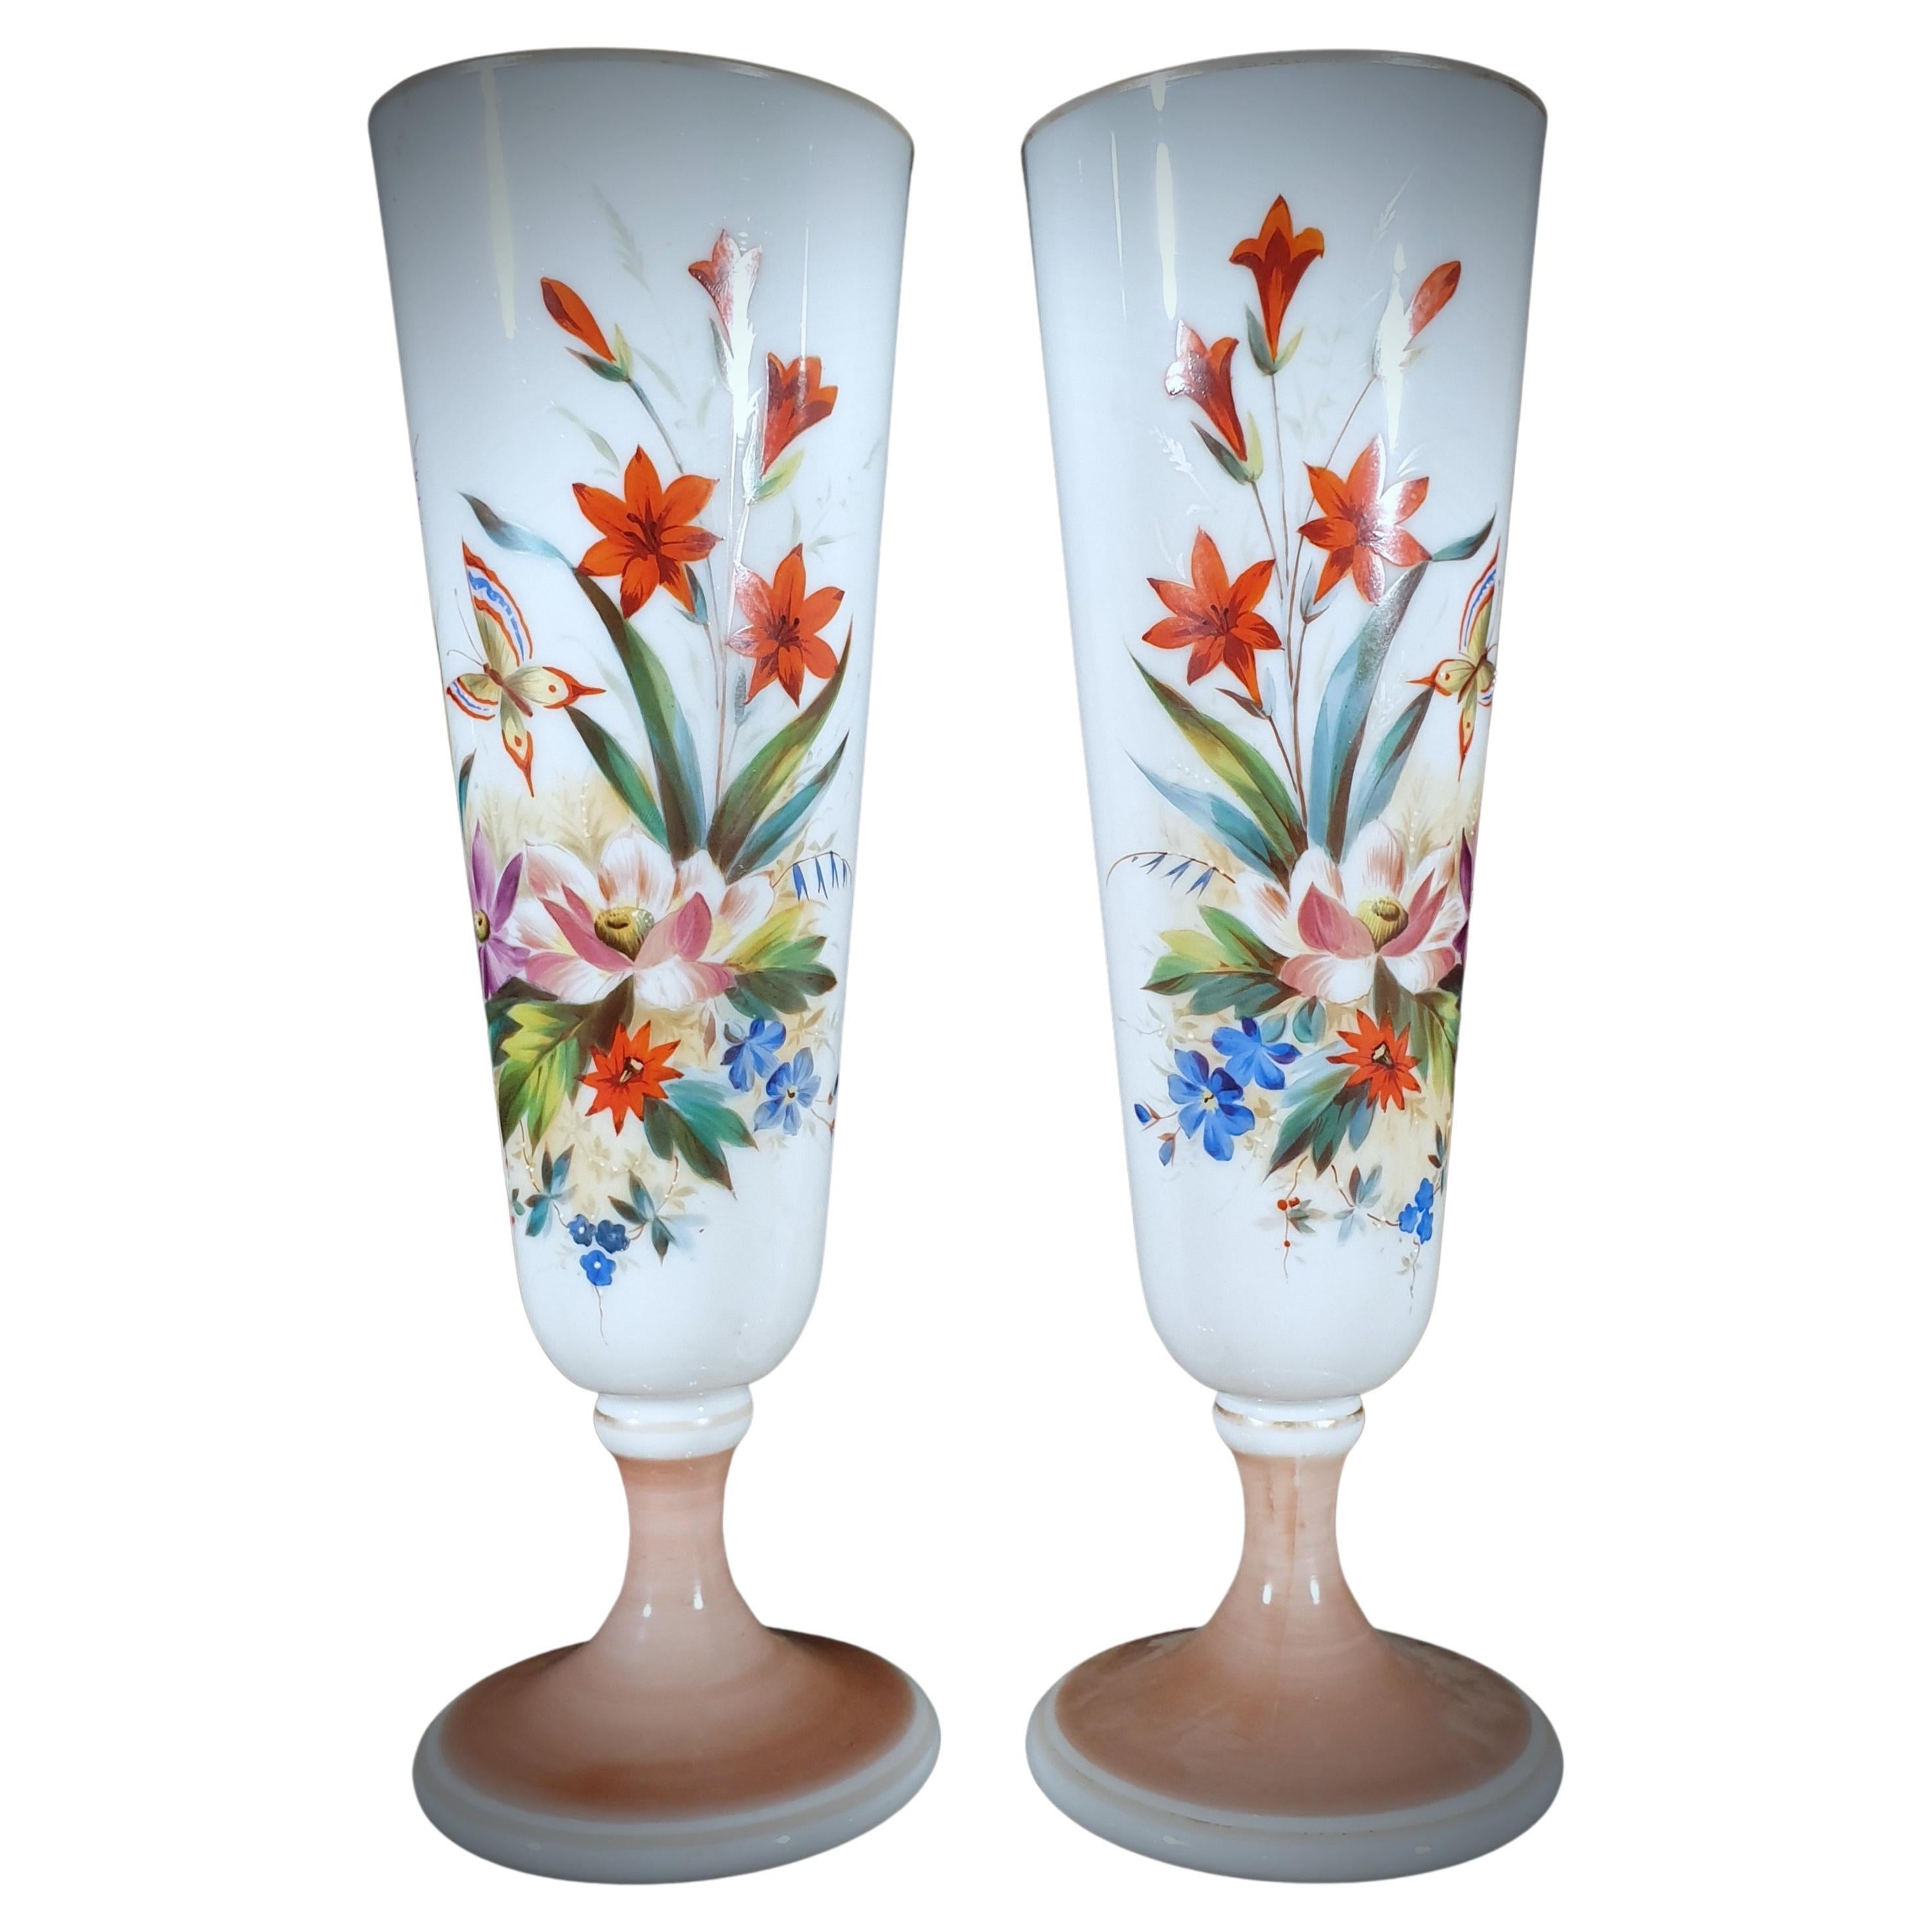 Paire de vases en verre opalin turquoise peints à la main avec papillons et fleurs